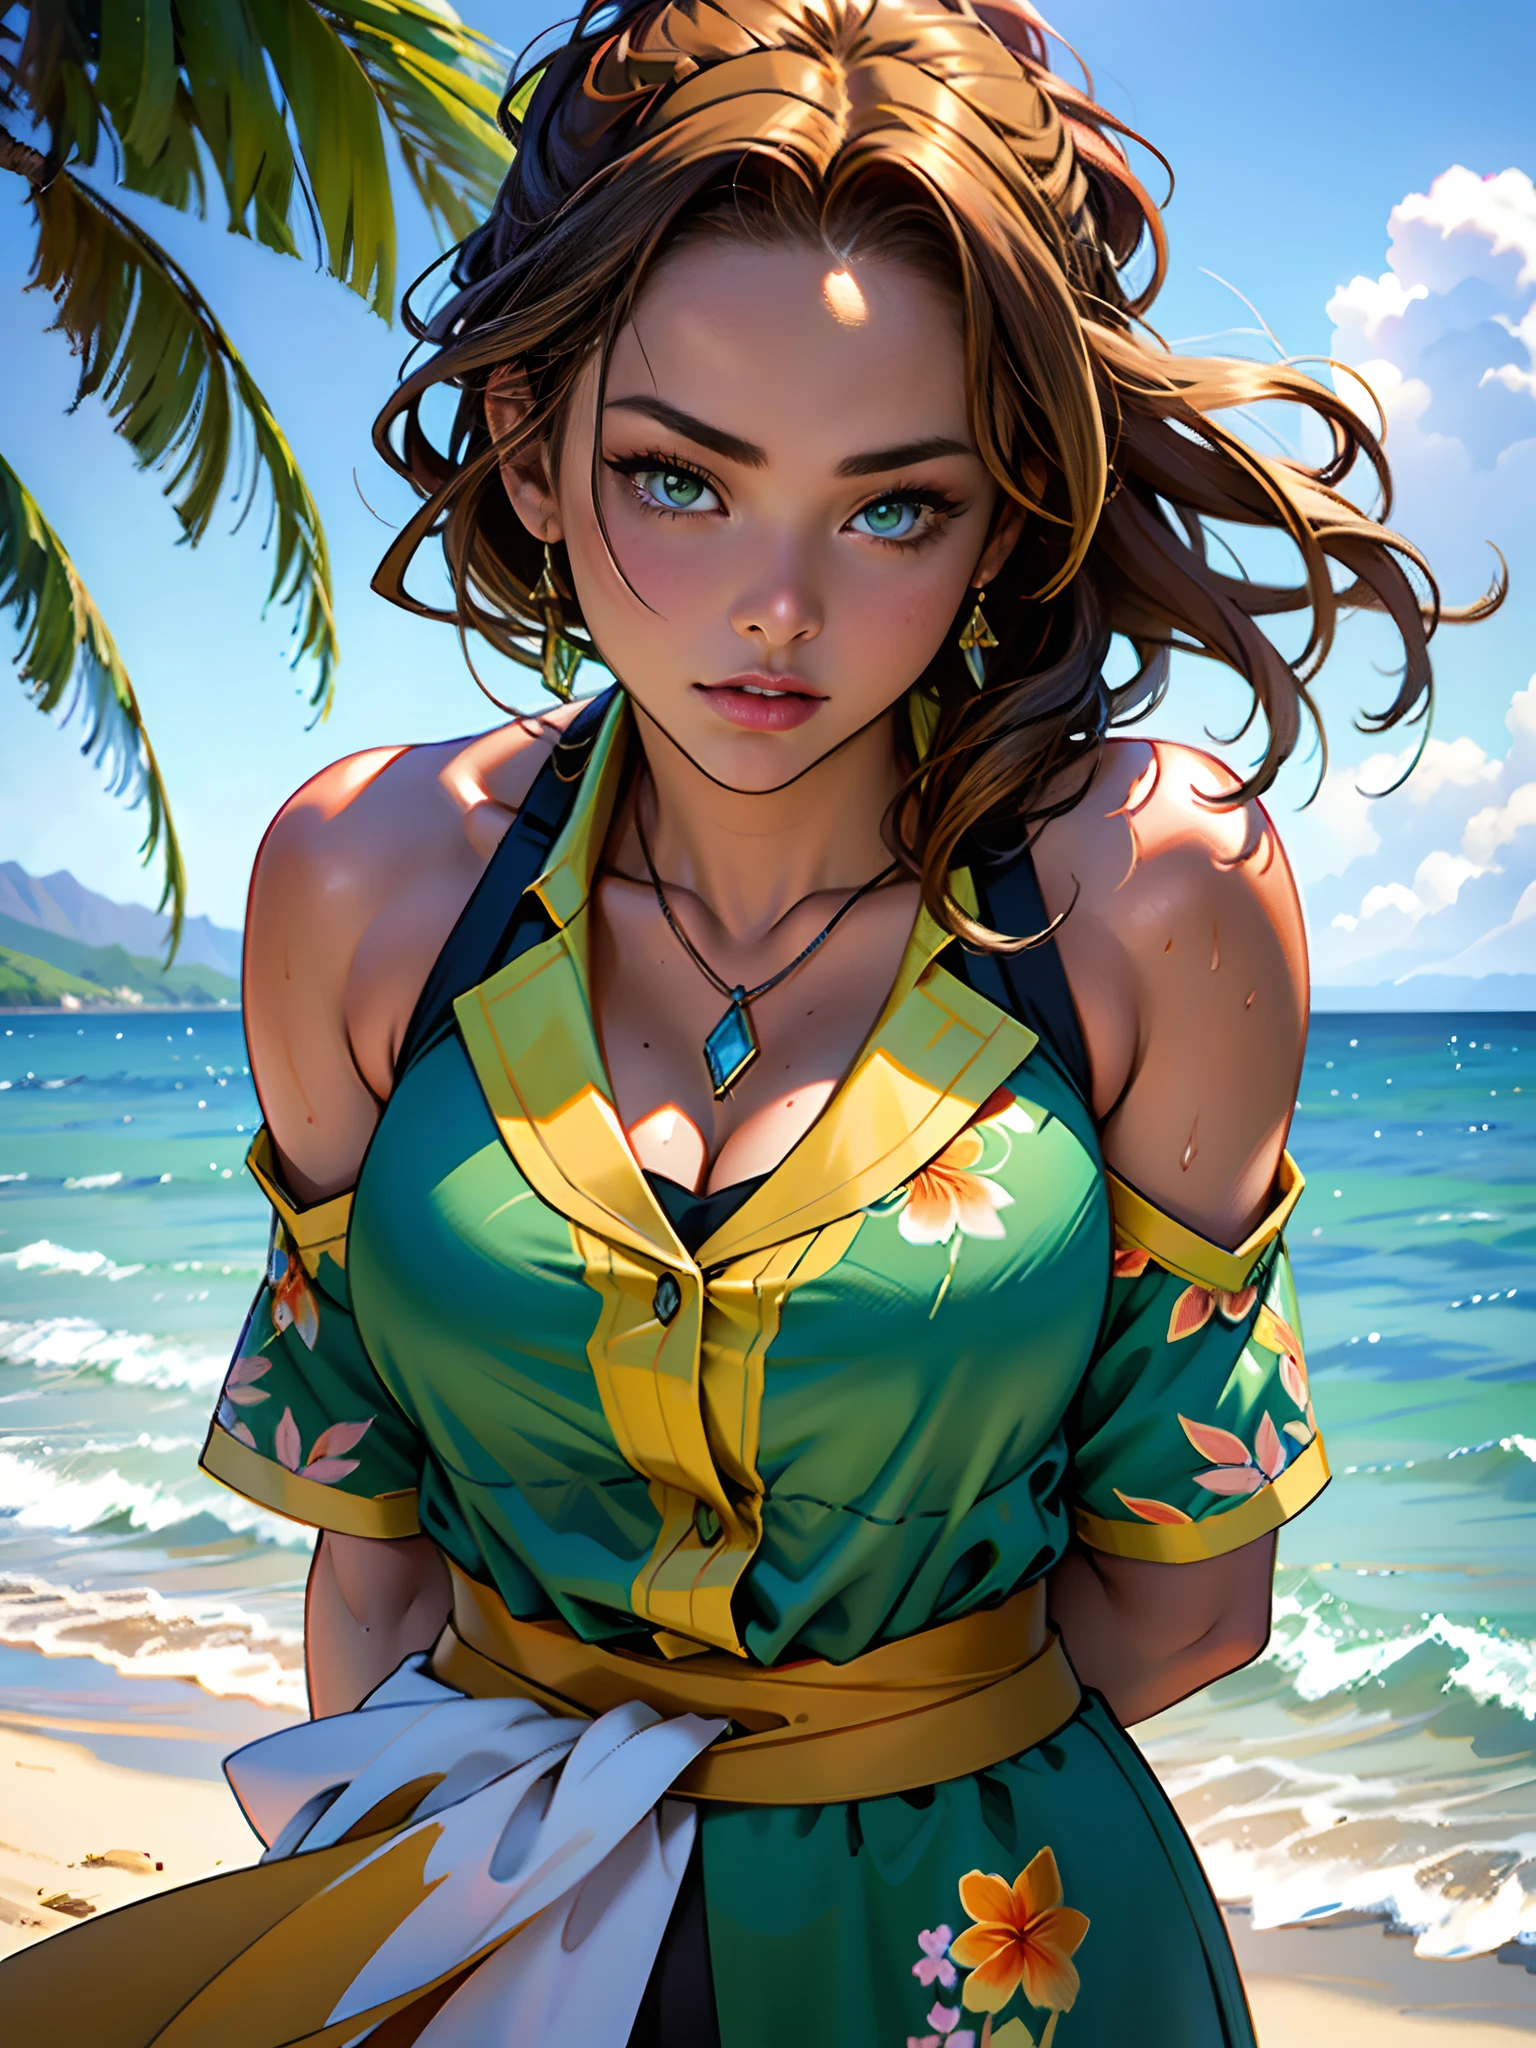 1 個女孩看著夏威夷拉海納背後燃燒的火焰, 漂亮的臉蛋, 綠眼睛, 1个女孩从水景画画, Jaime Frias 的風格, 最好的品質, 實際的, 屢獲殊榮的彩色插圖, (複雜的細節: 1.2), (精細細節)